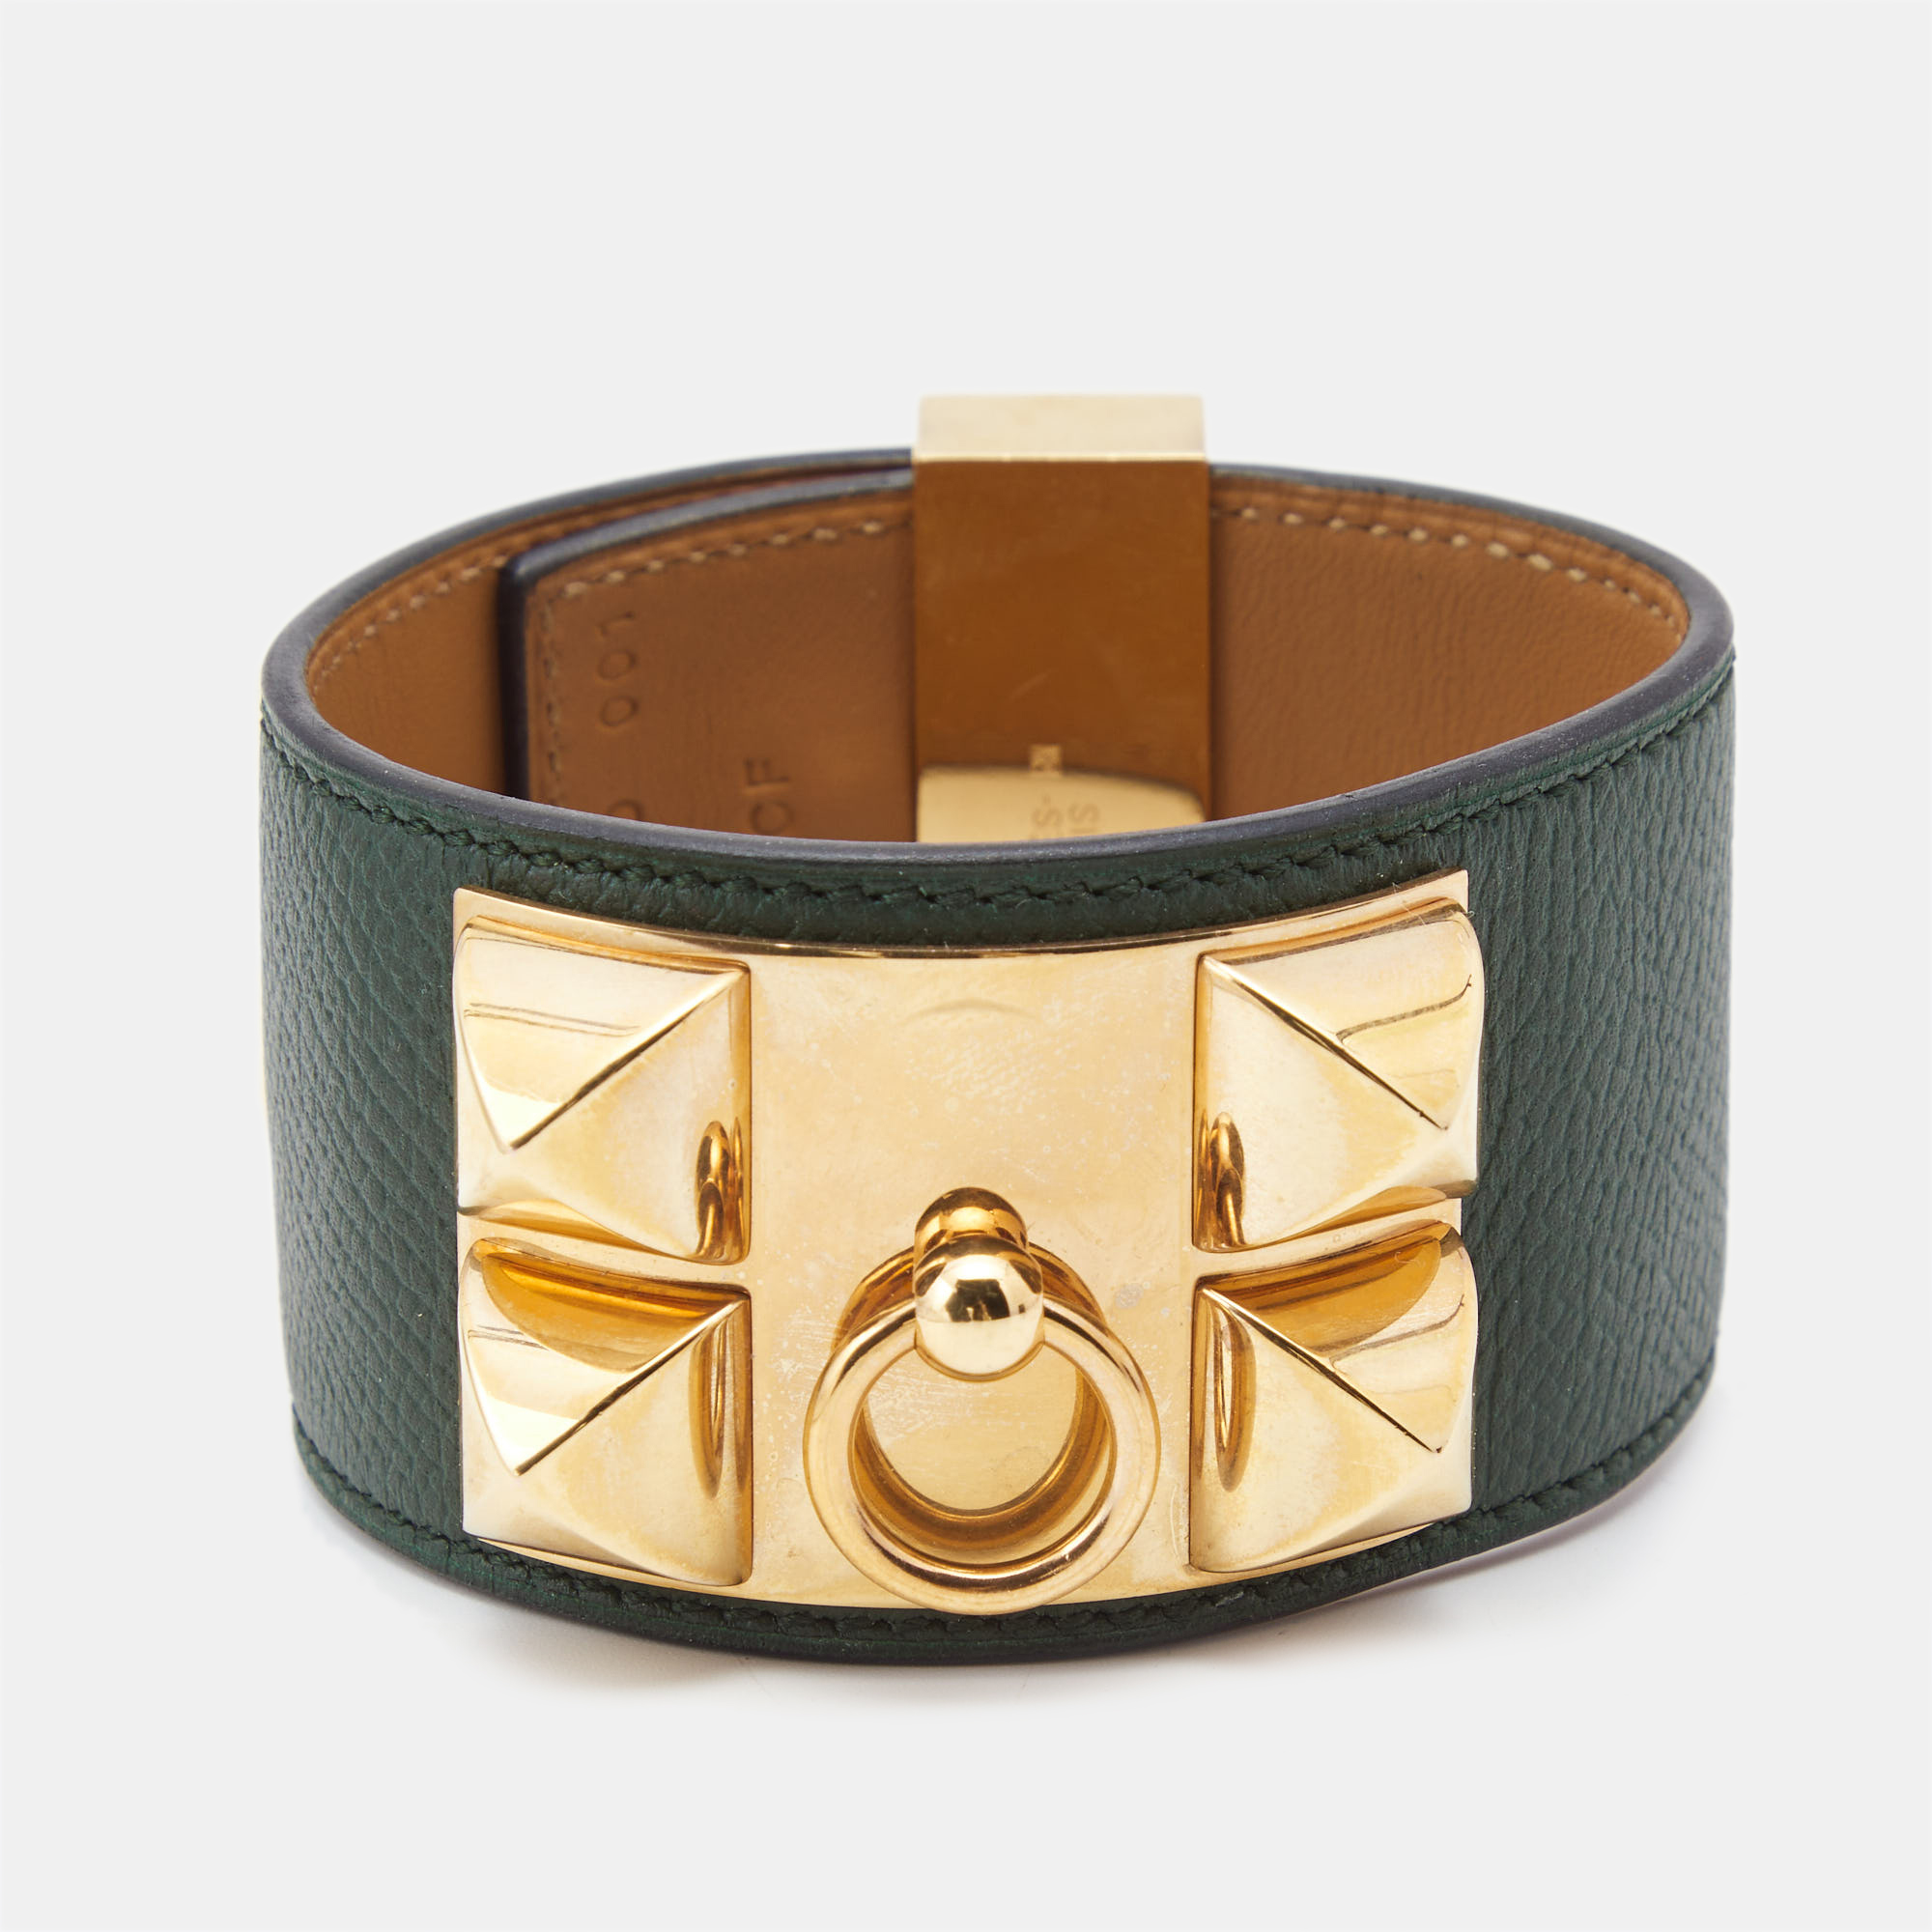 

Hermes Collier de Chien Leather Gold Plated Bracelet